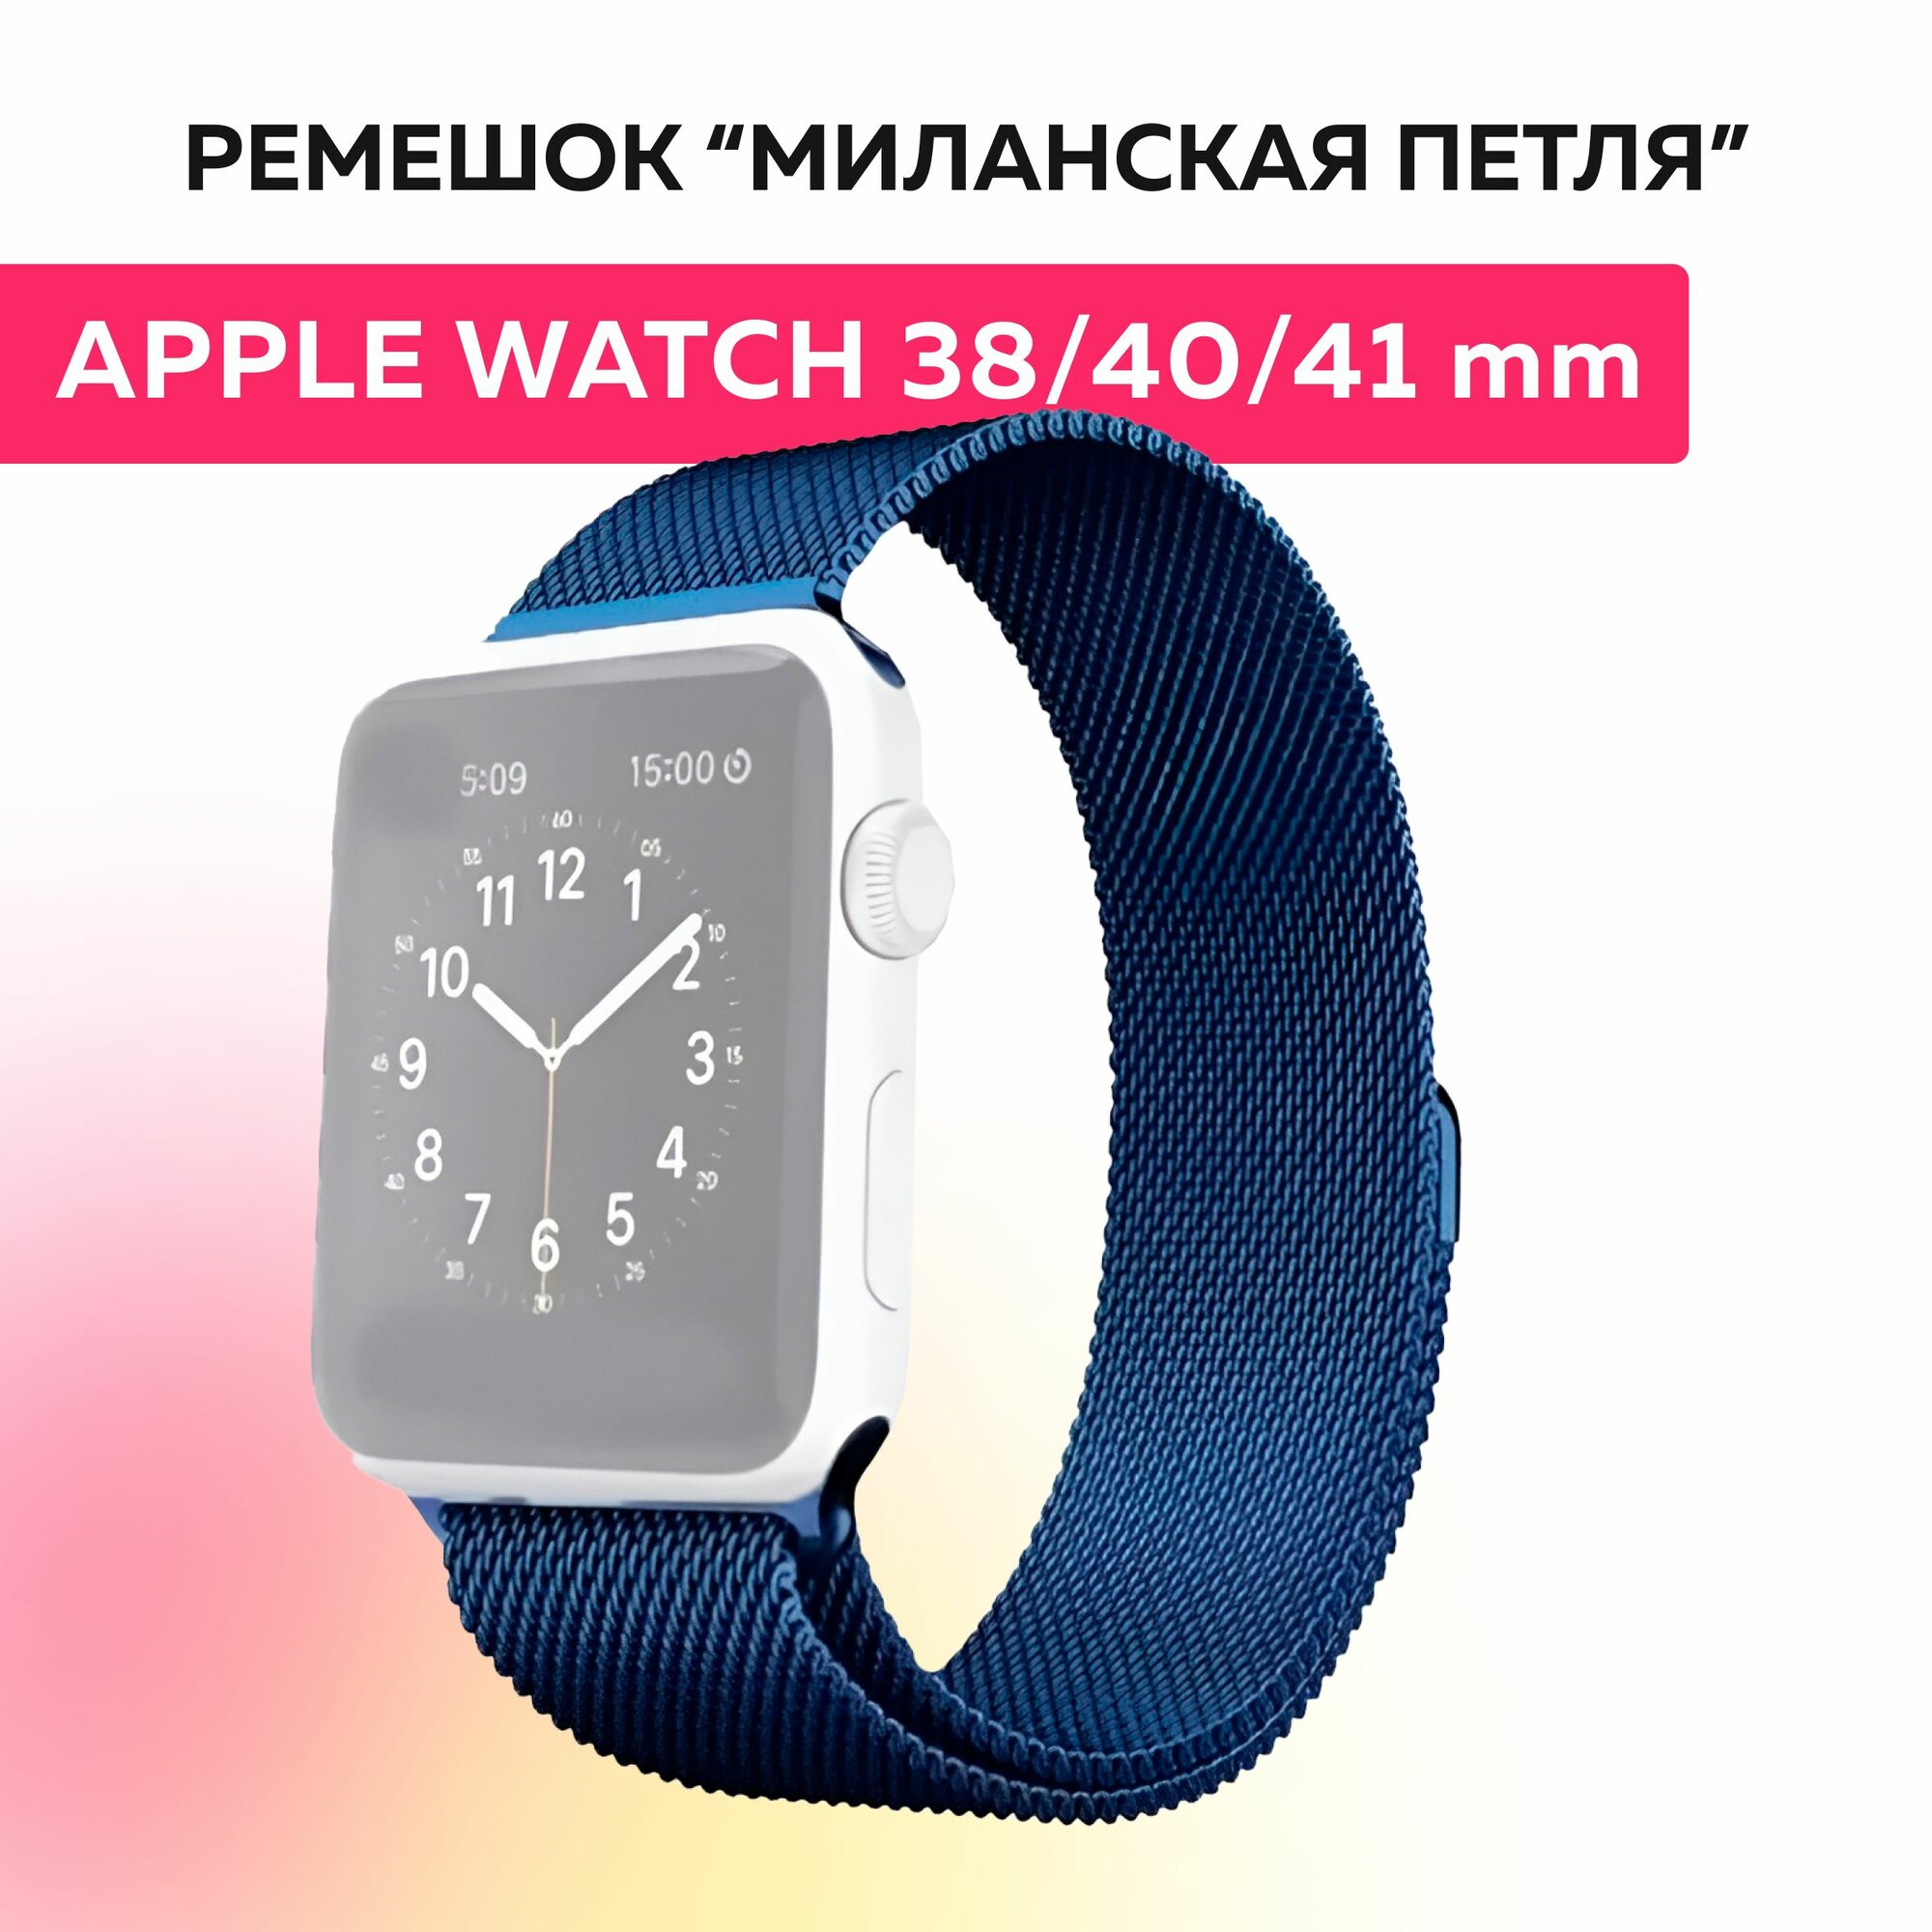 Ремешок "миланская петля" для Apple Watch браслет на умные часы эпл вотч 38, 40, 41 mm